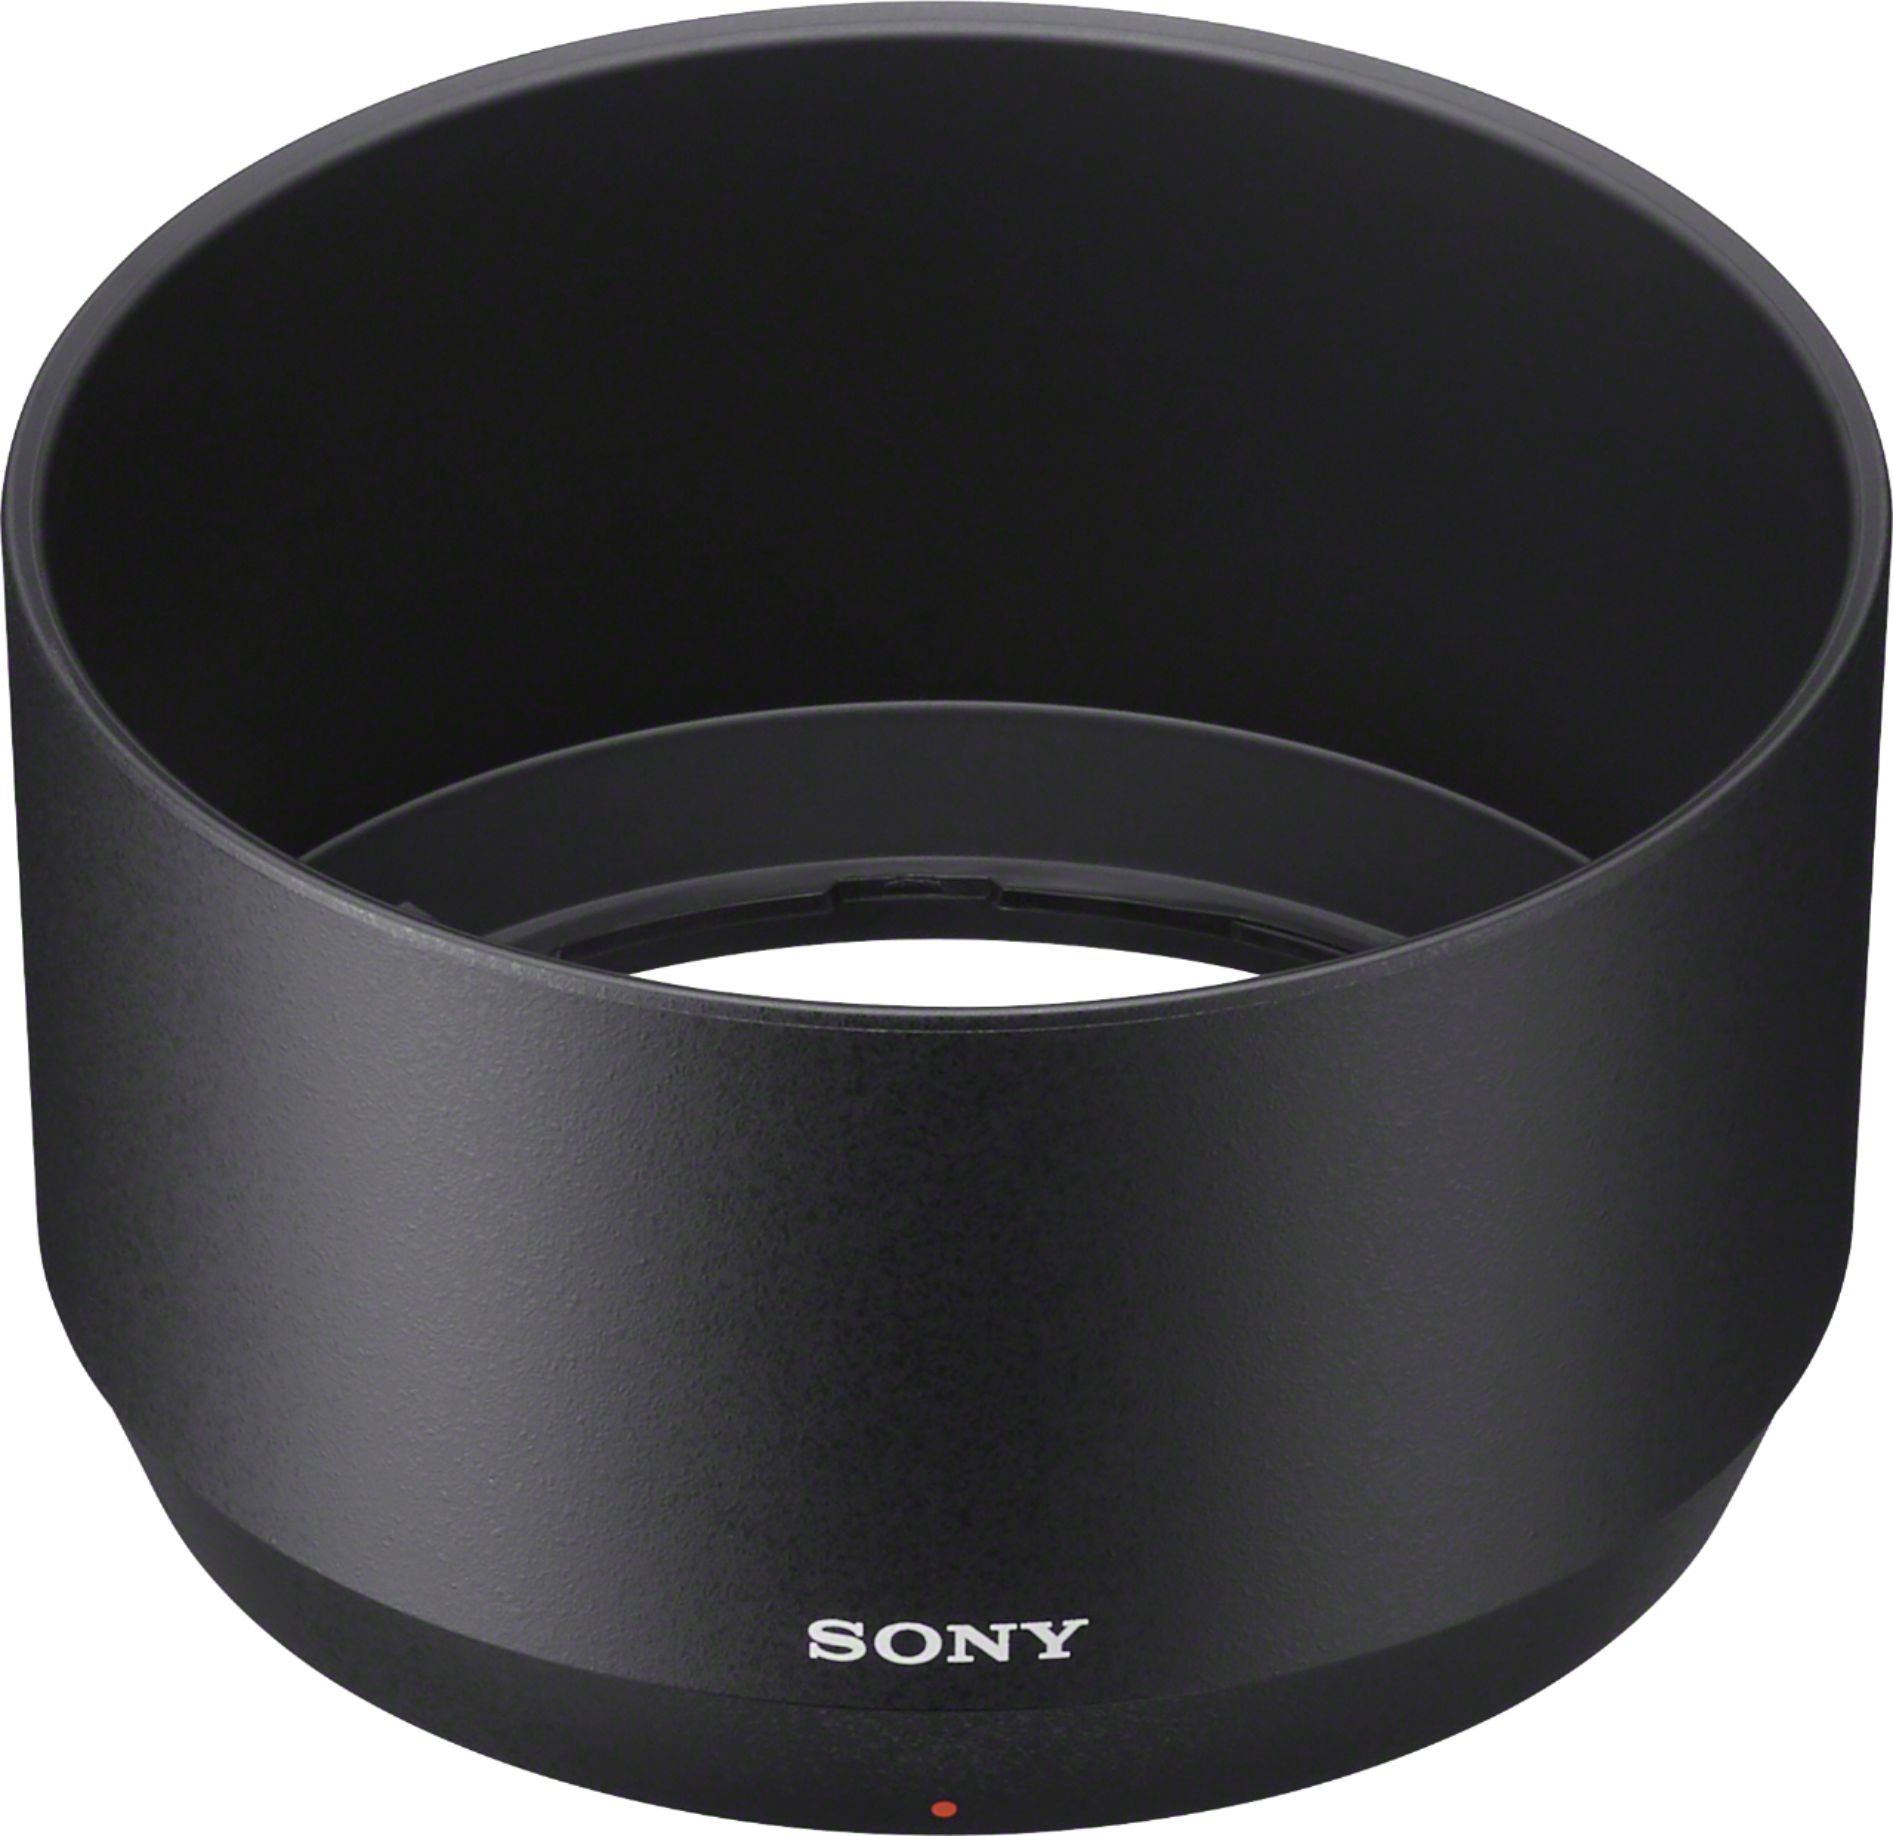 Sony E 70-350mm F4.5-6.3 G OSS Telephoto Zoom Lens for E-mount